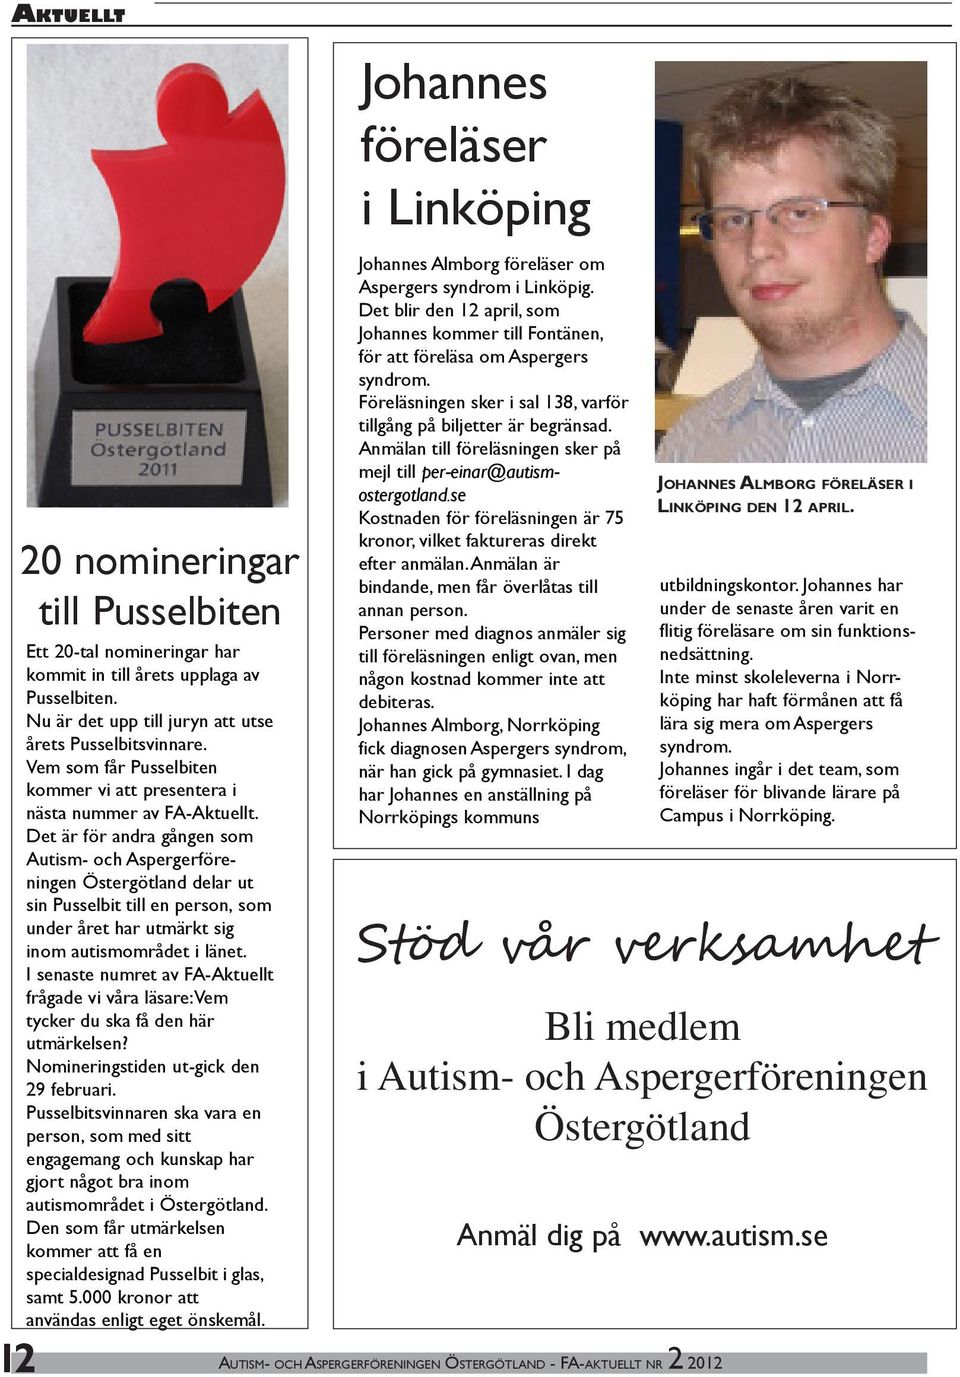 Det är för andra gången som Autism- och Aspergerföreningen Östergötland delar ut sin Pusselbit till en person, som under året har utmärkt sig inom autismområdet i länet.